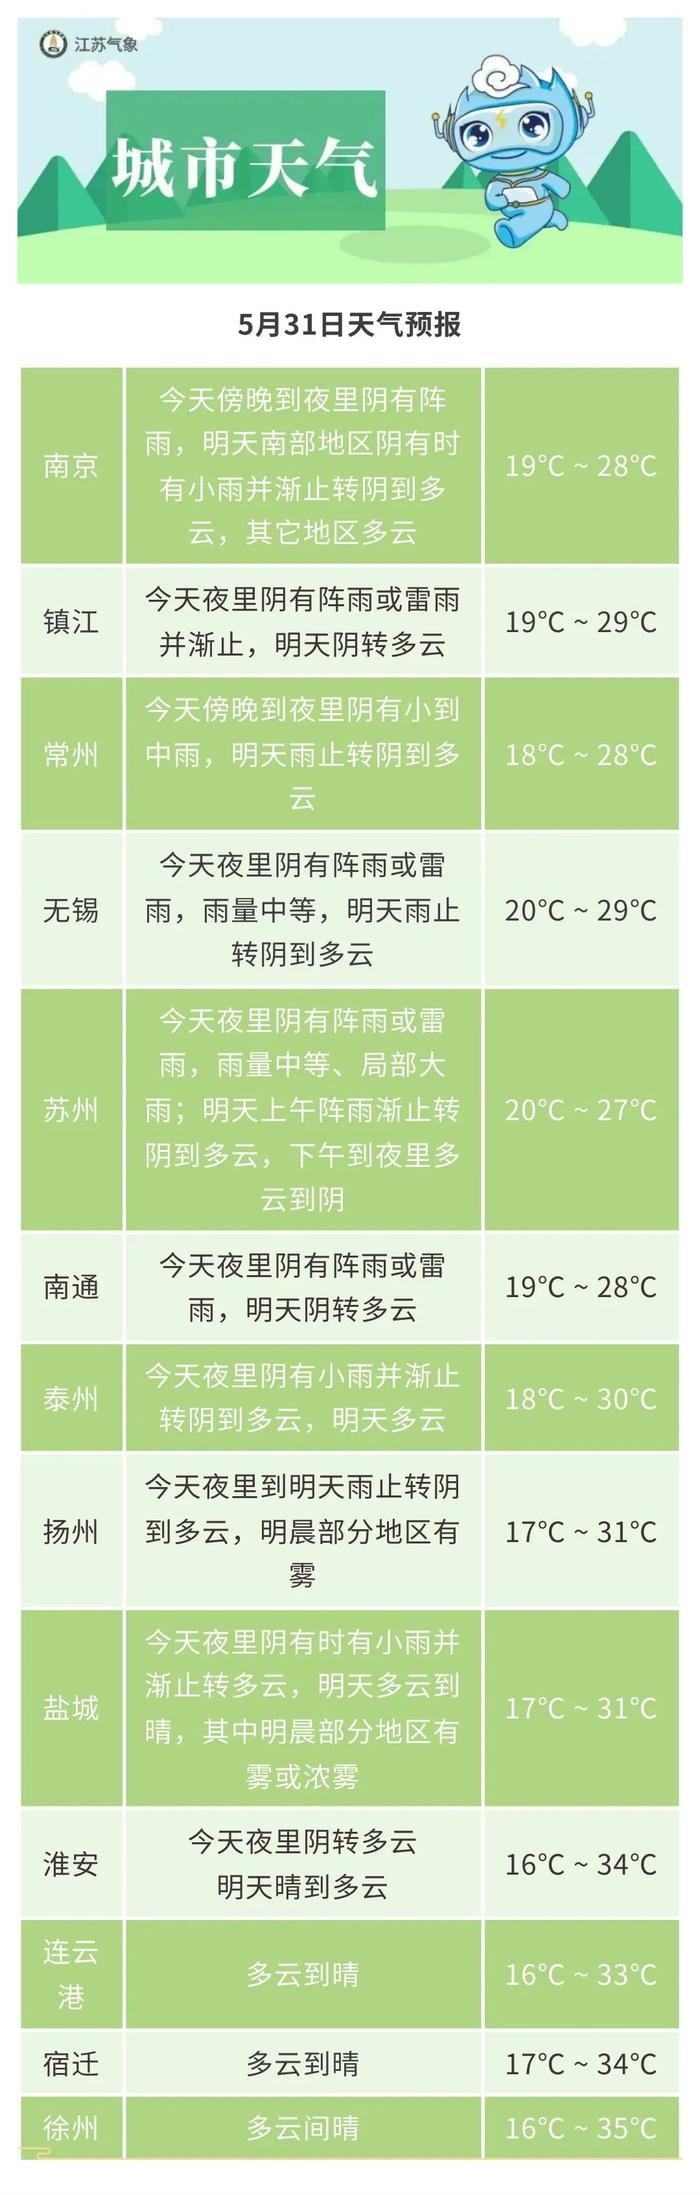 2次高温 4次降水!江苏发布最新天气预报